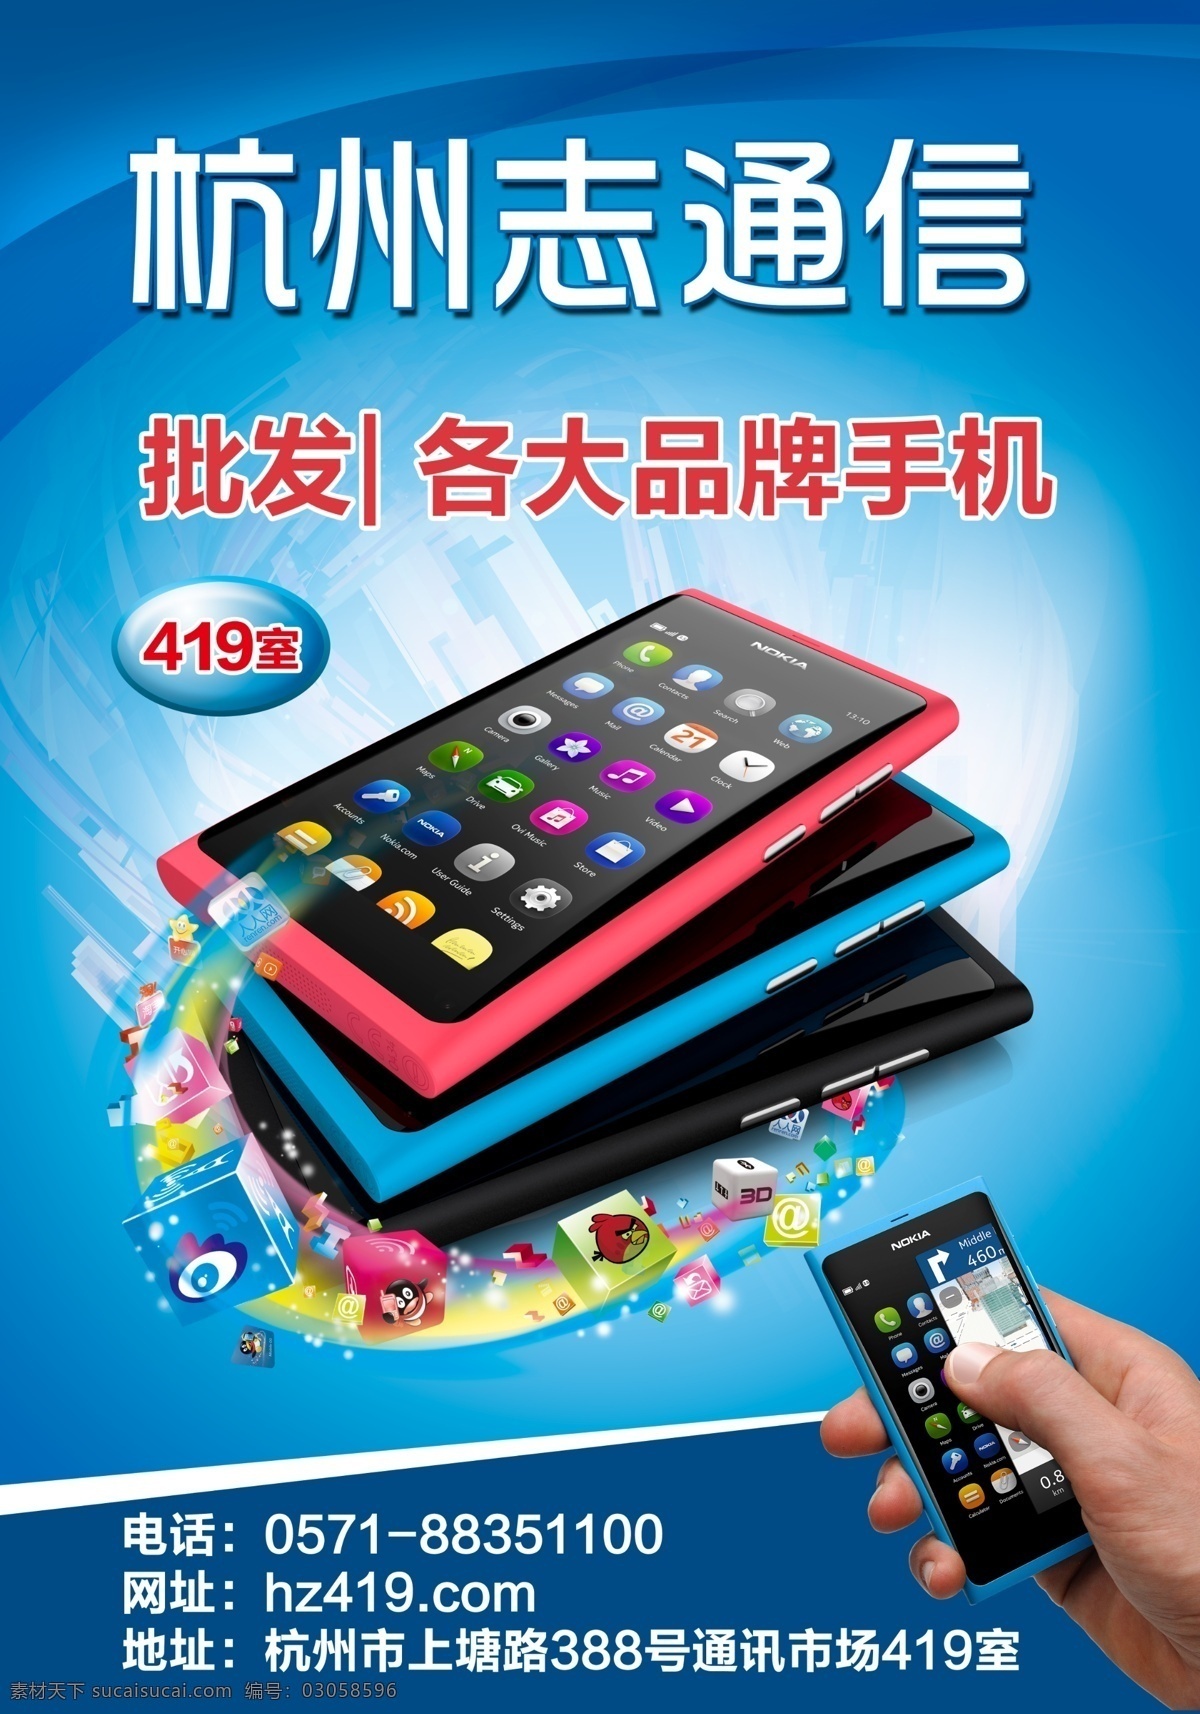 诺基亚 n9 手机 海报 手机批发 诺基亚n9 3g智能手机 科技 手拿手机 炫彩蓝色 广告设计模板 源文件 psd素材